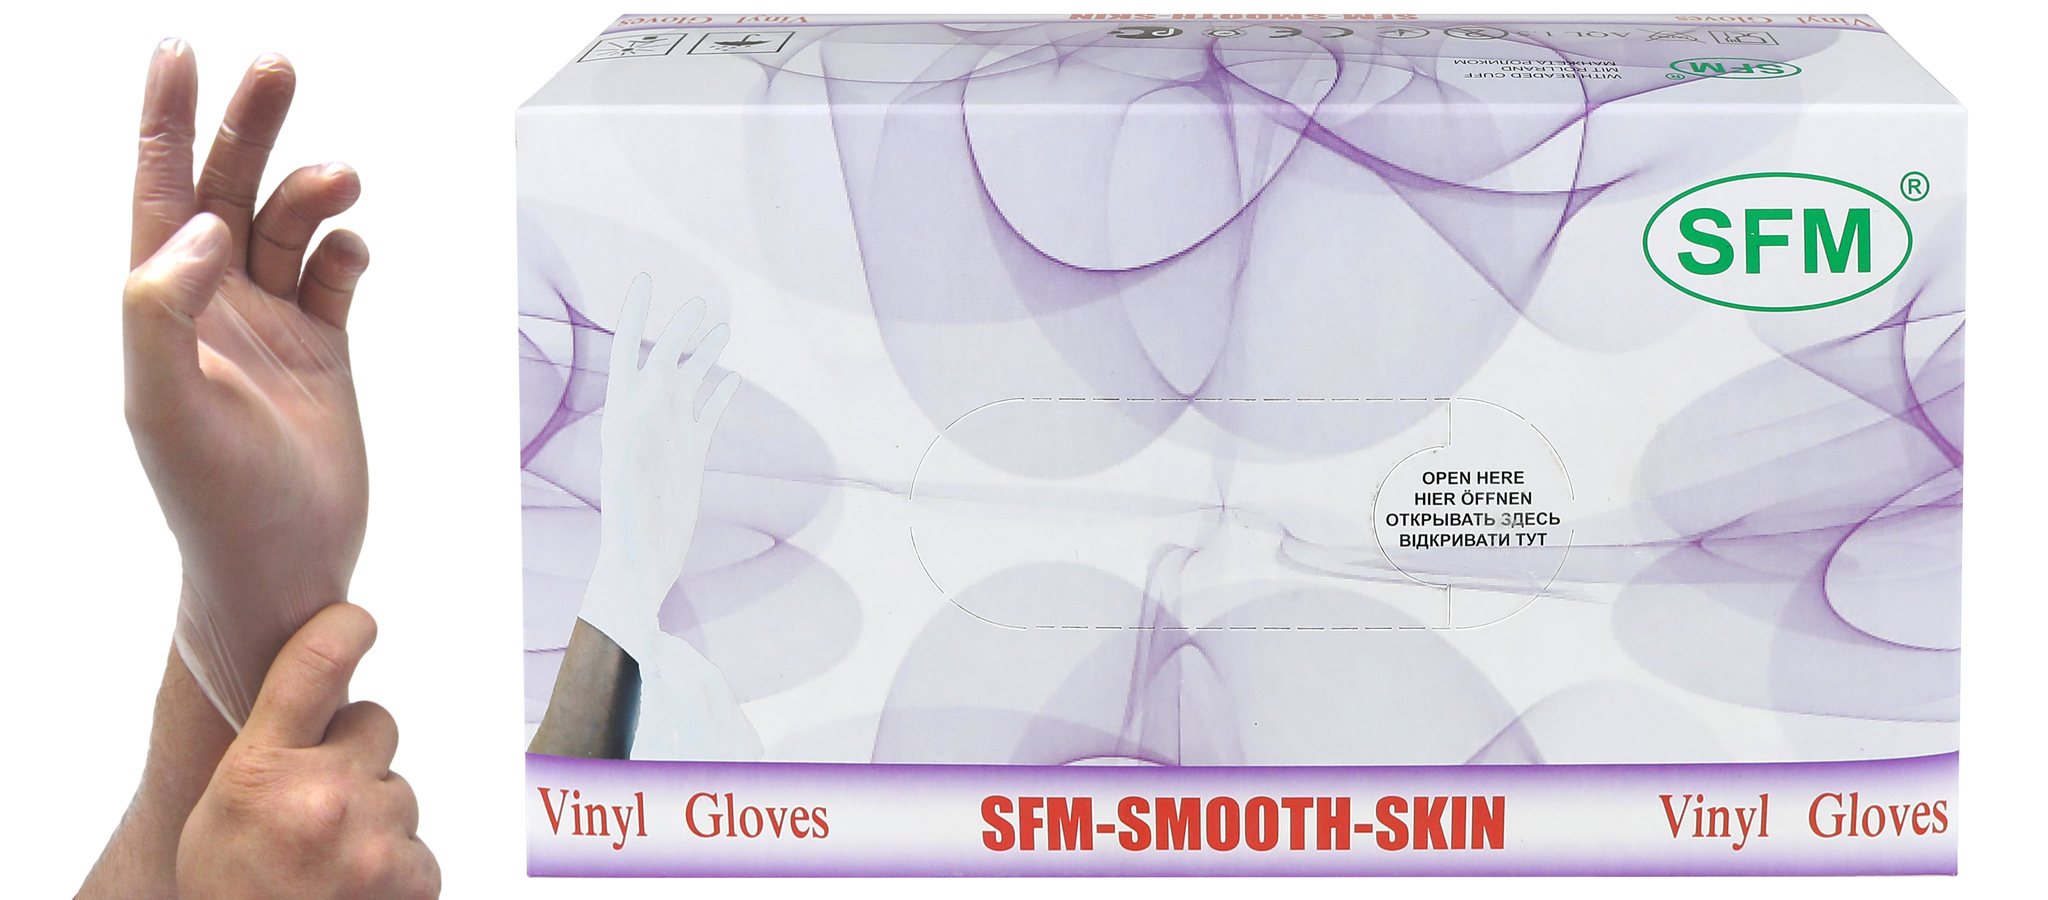 Купить Перчатки смотровые SFM виниловые размер S 100 шт.